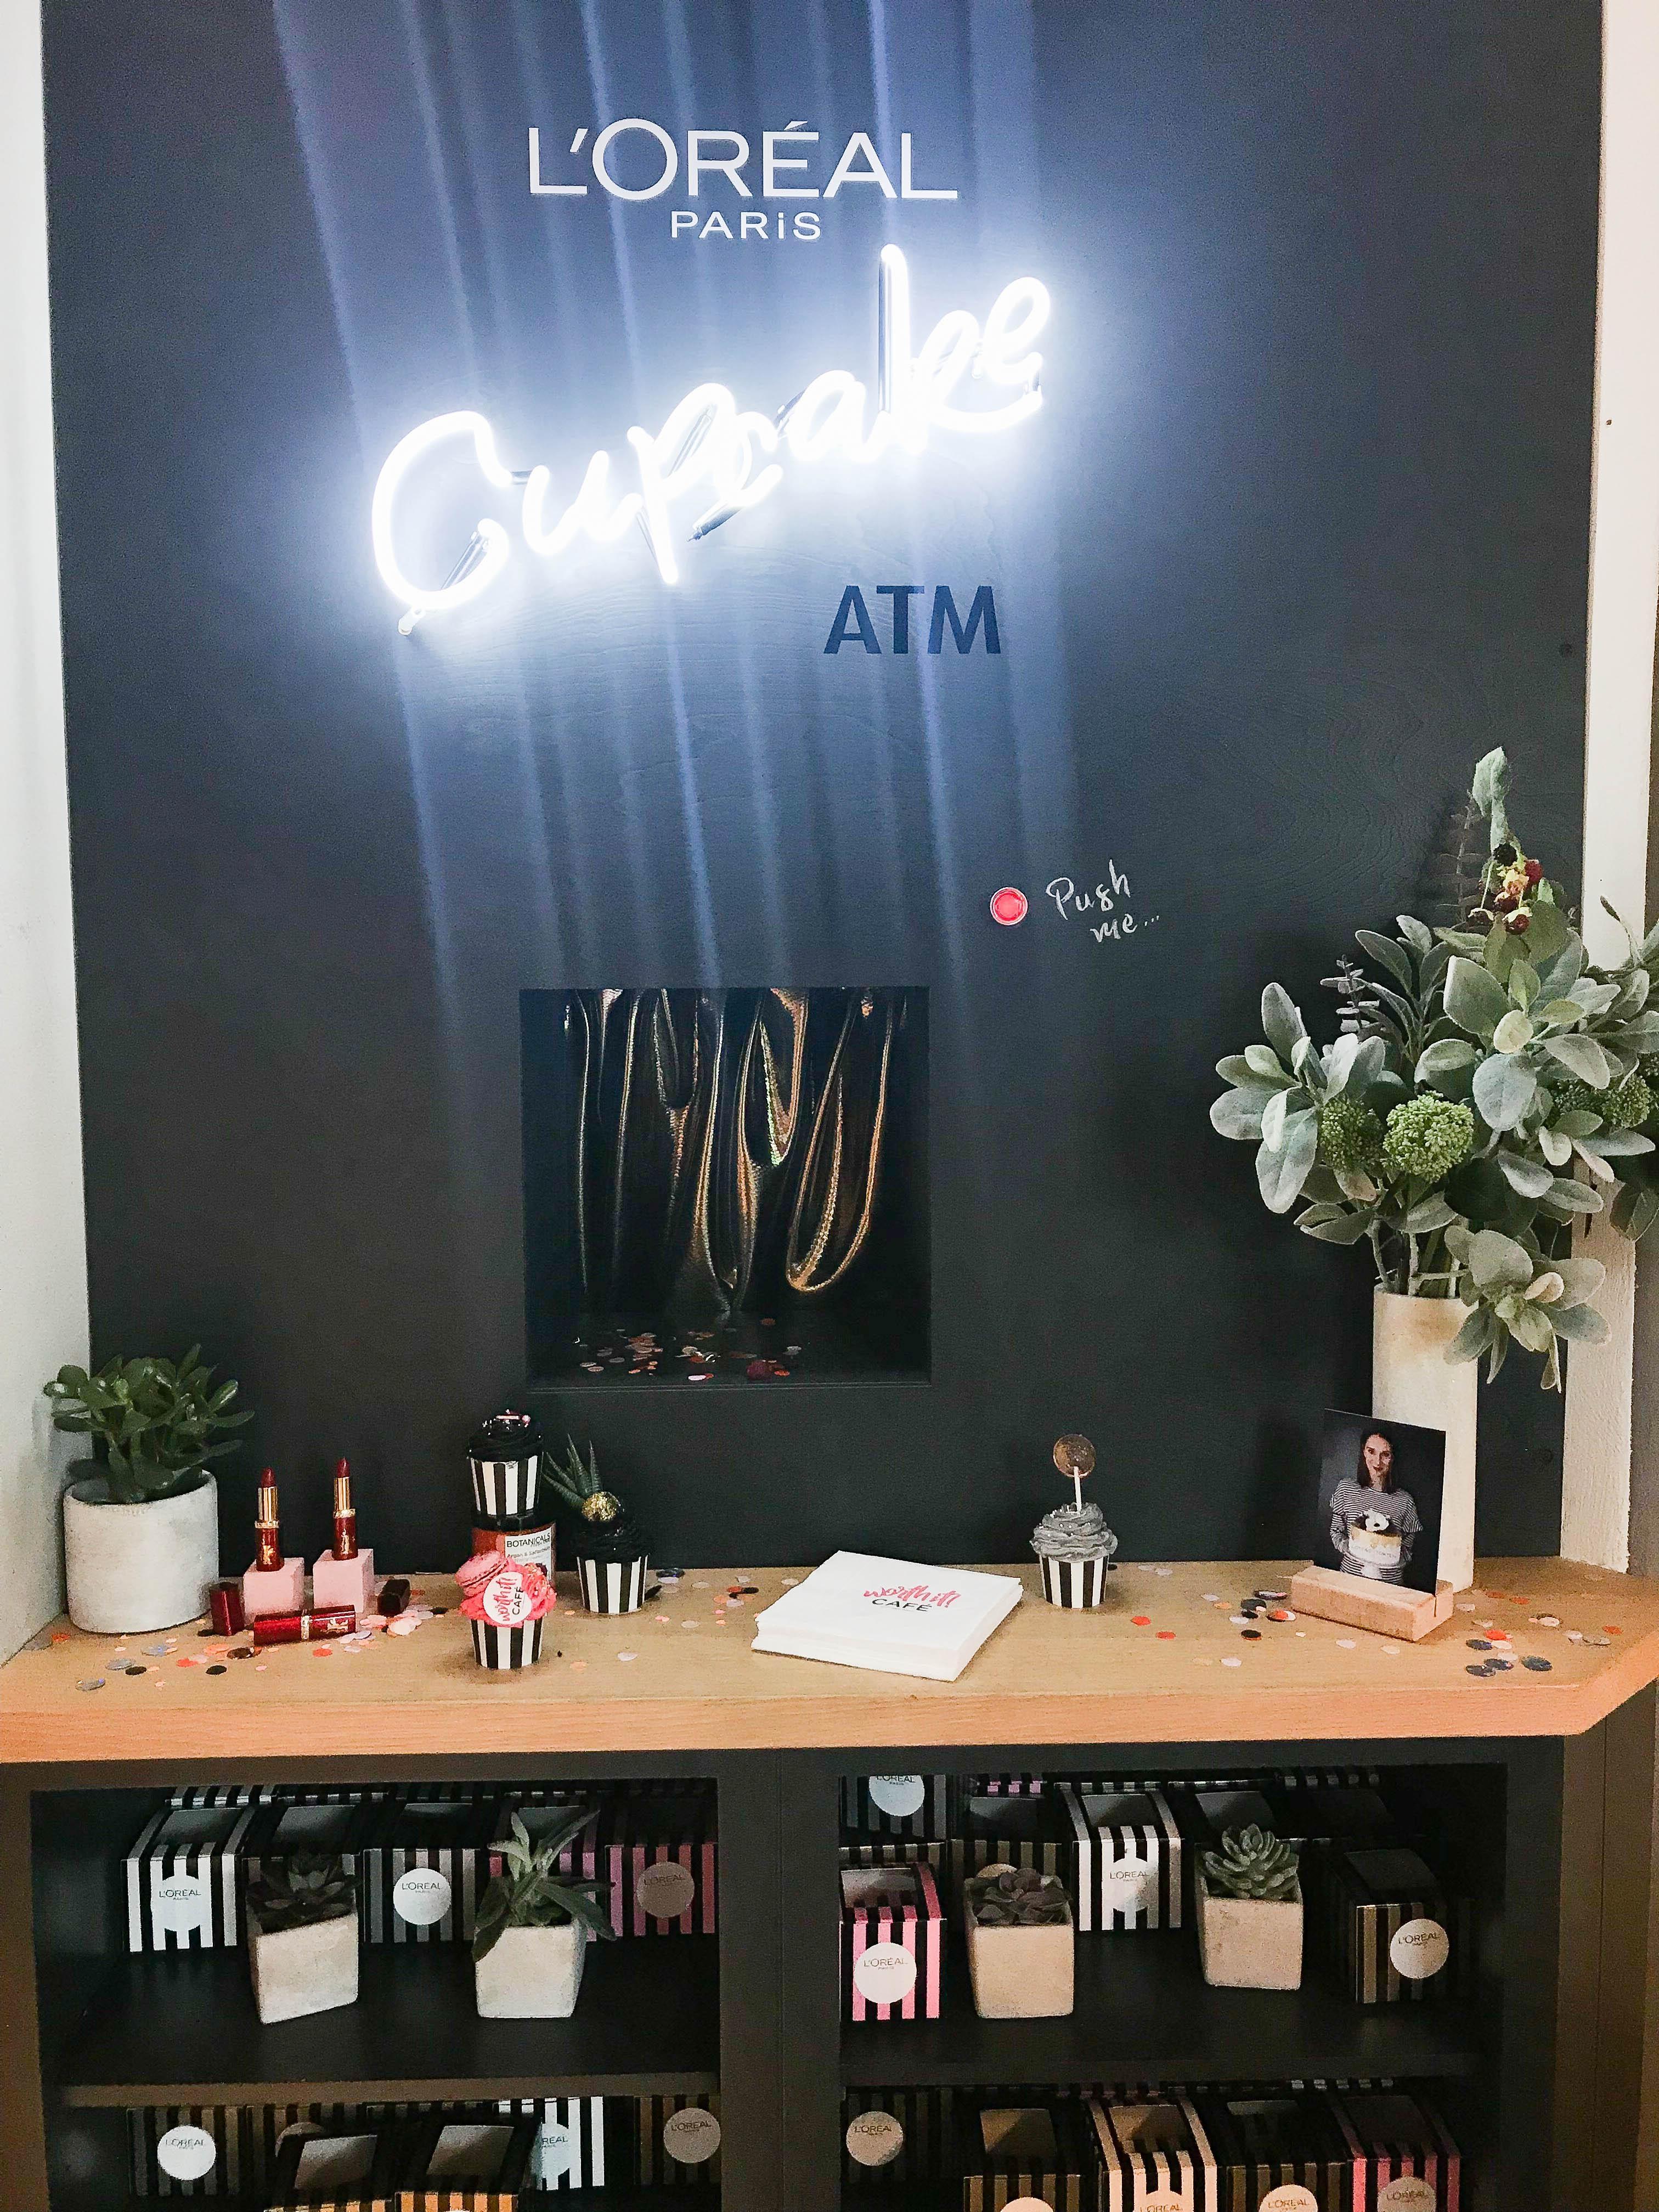 Schleckermäuler aufgepasst: Im Worth it Café gibt's einen Cupcake-ATM! 💕#loreal #berlinale2019